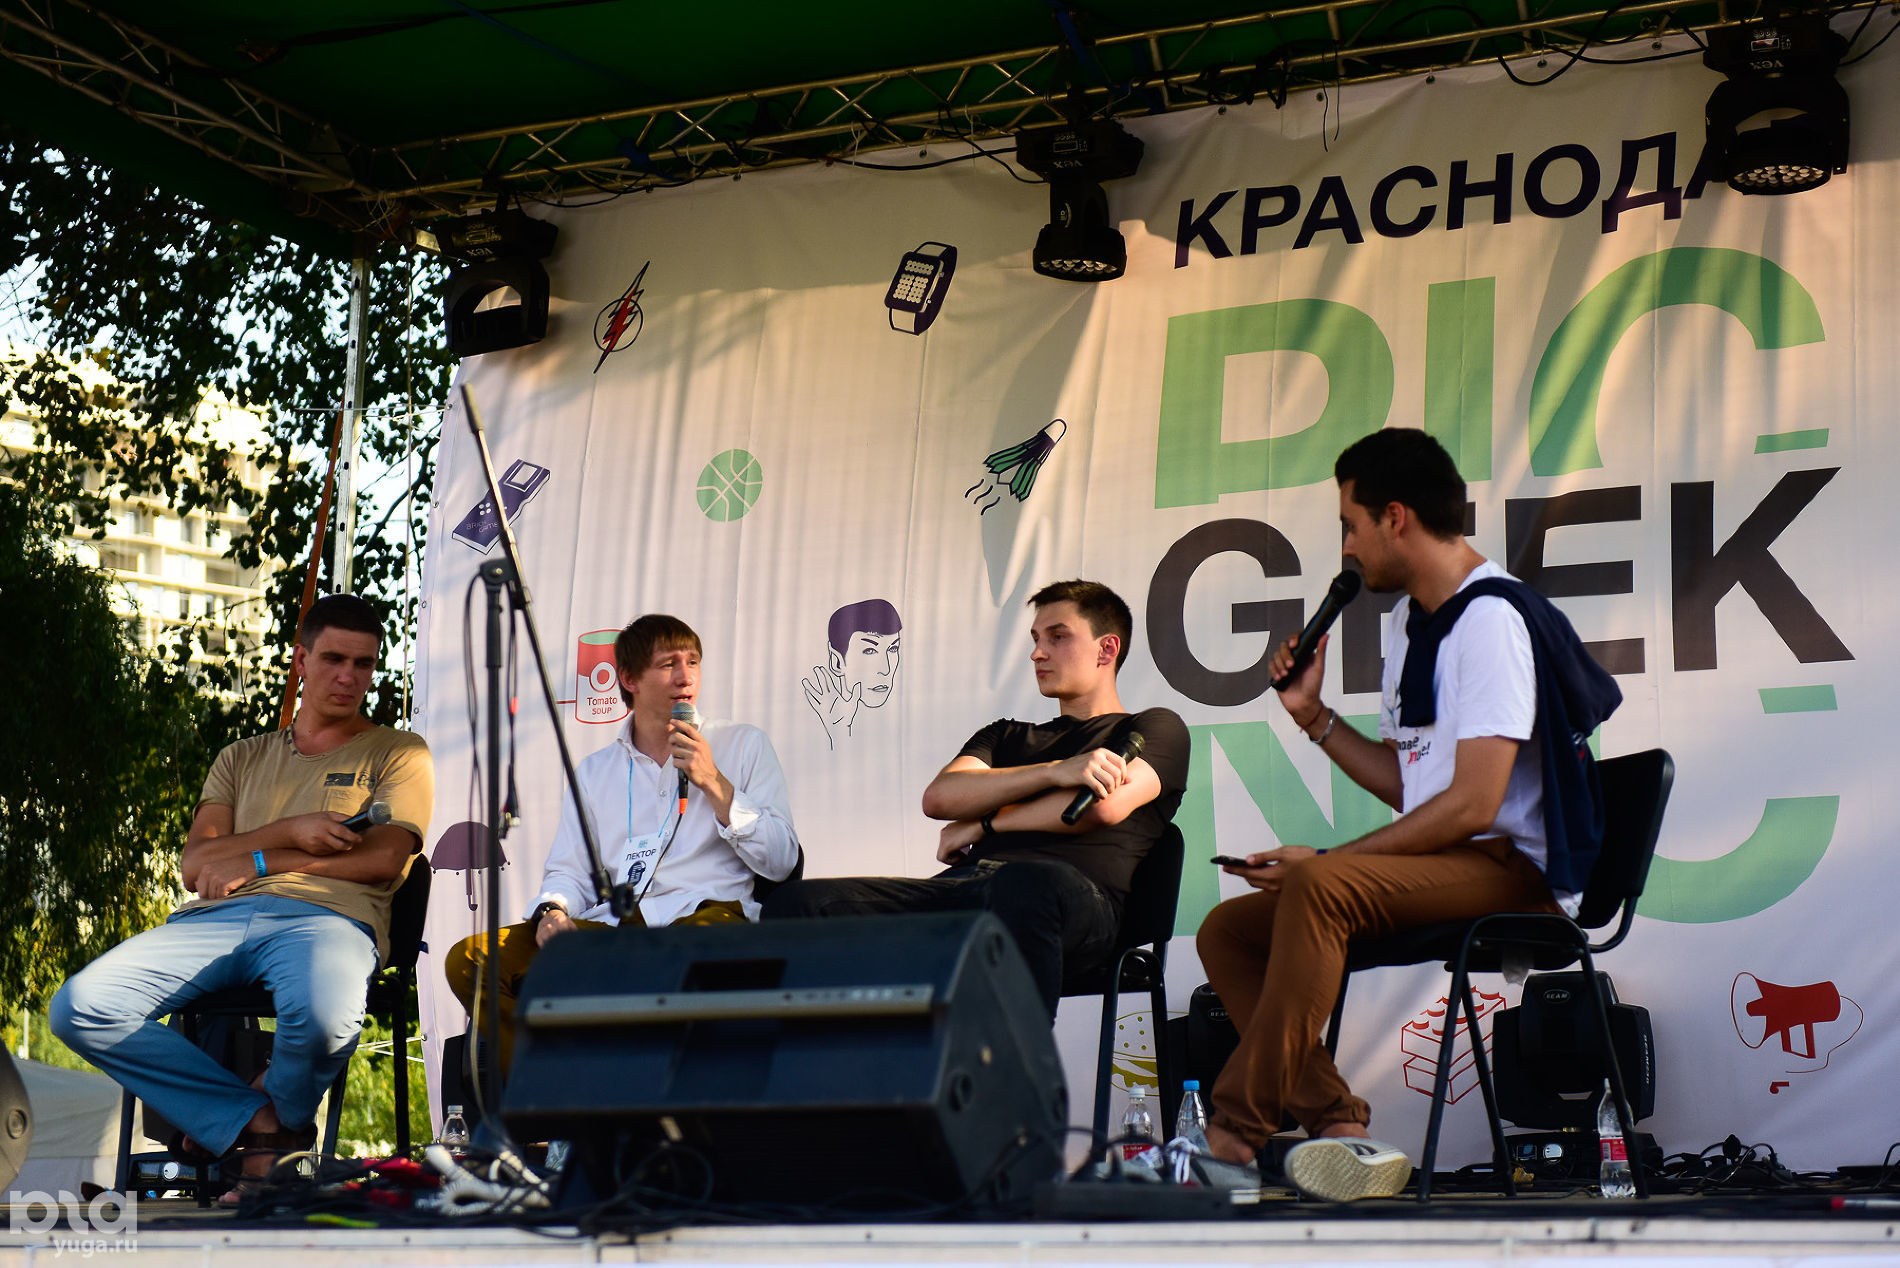 Фестиваль Geek Picnic в Краснодаре, 2017 год © Фото Елены Синеок, Юга.ру